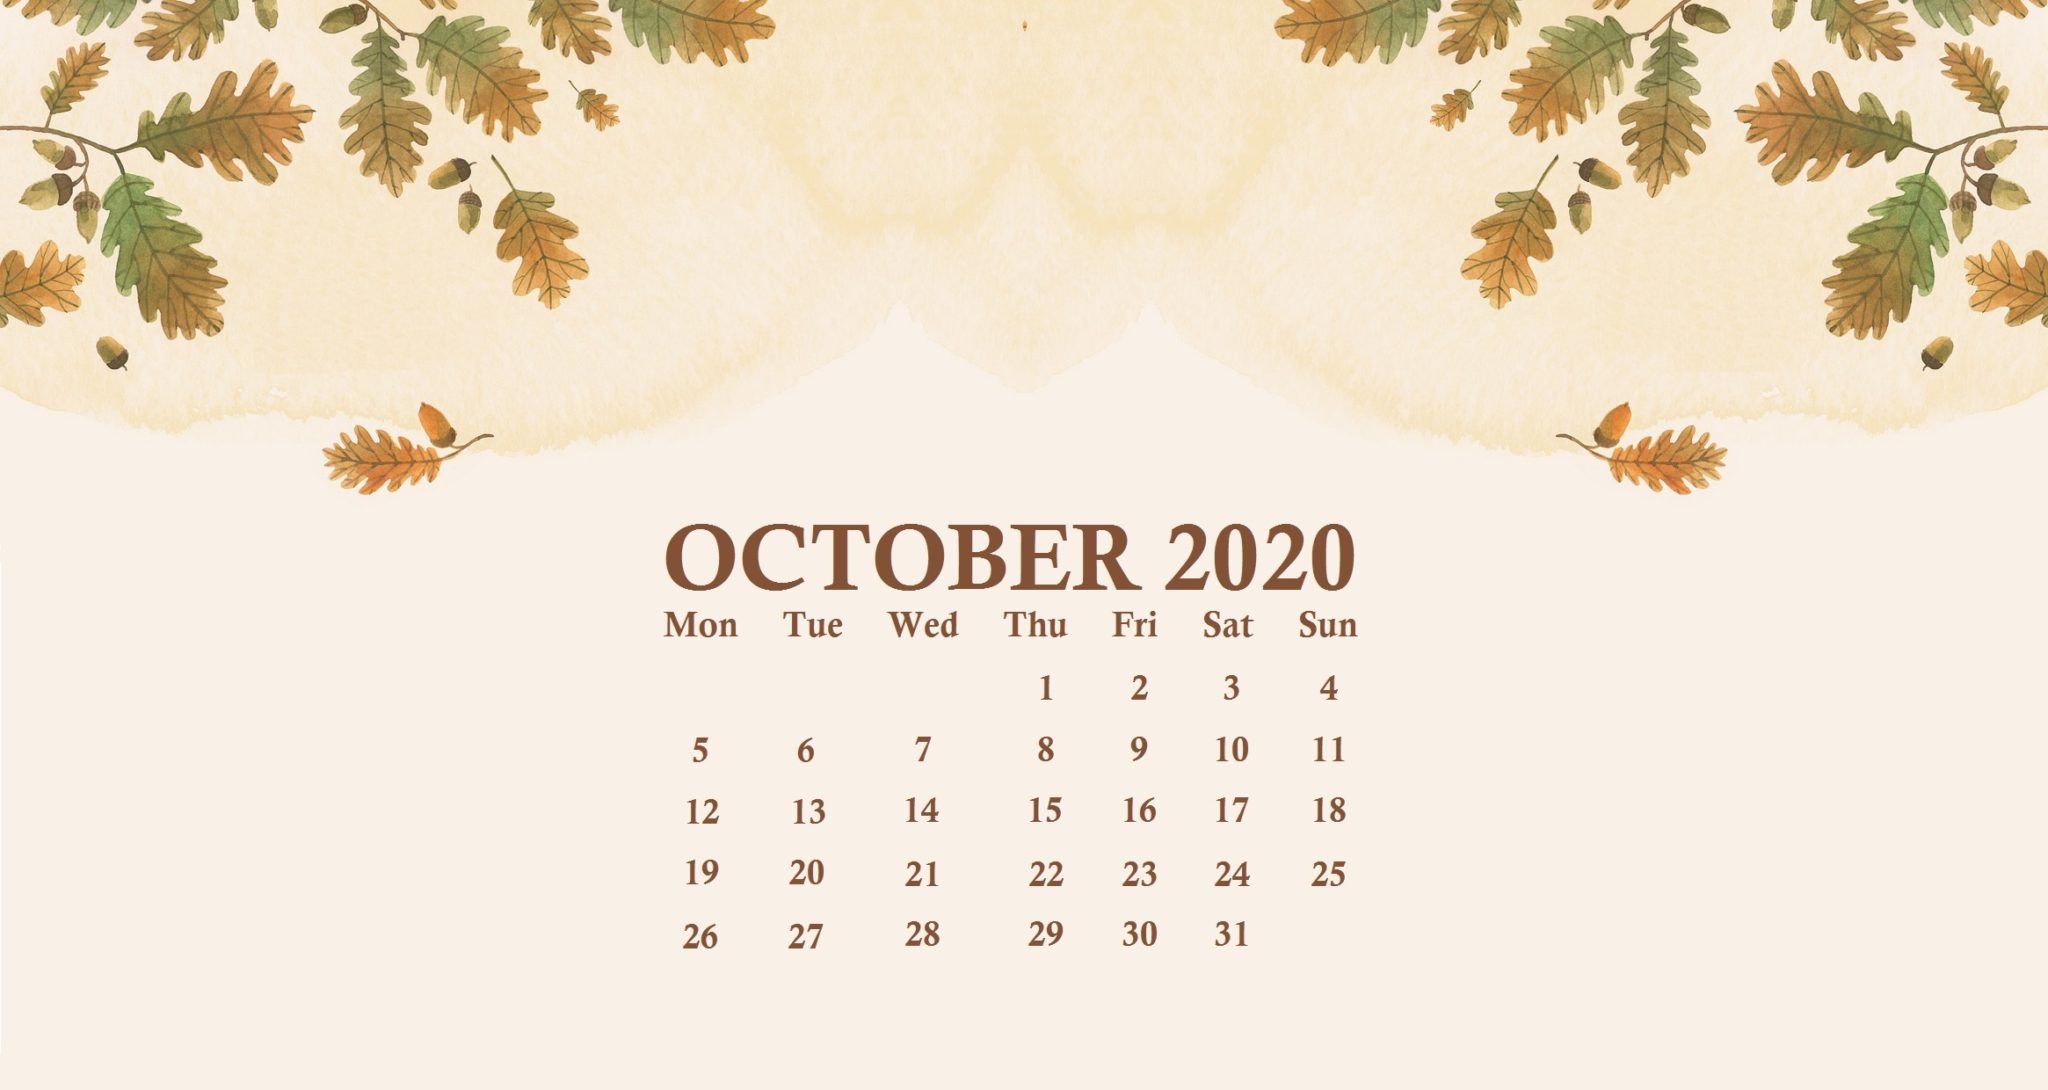 October 2020 Desktop Calendar Wallpaper. Calendar wallpaper, Desktop wallpaper calendar, Desktop calendar